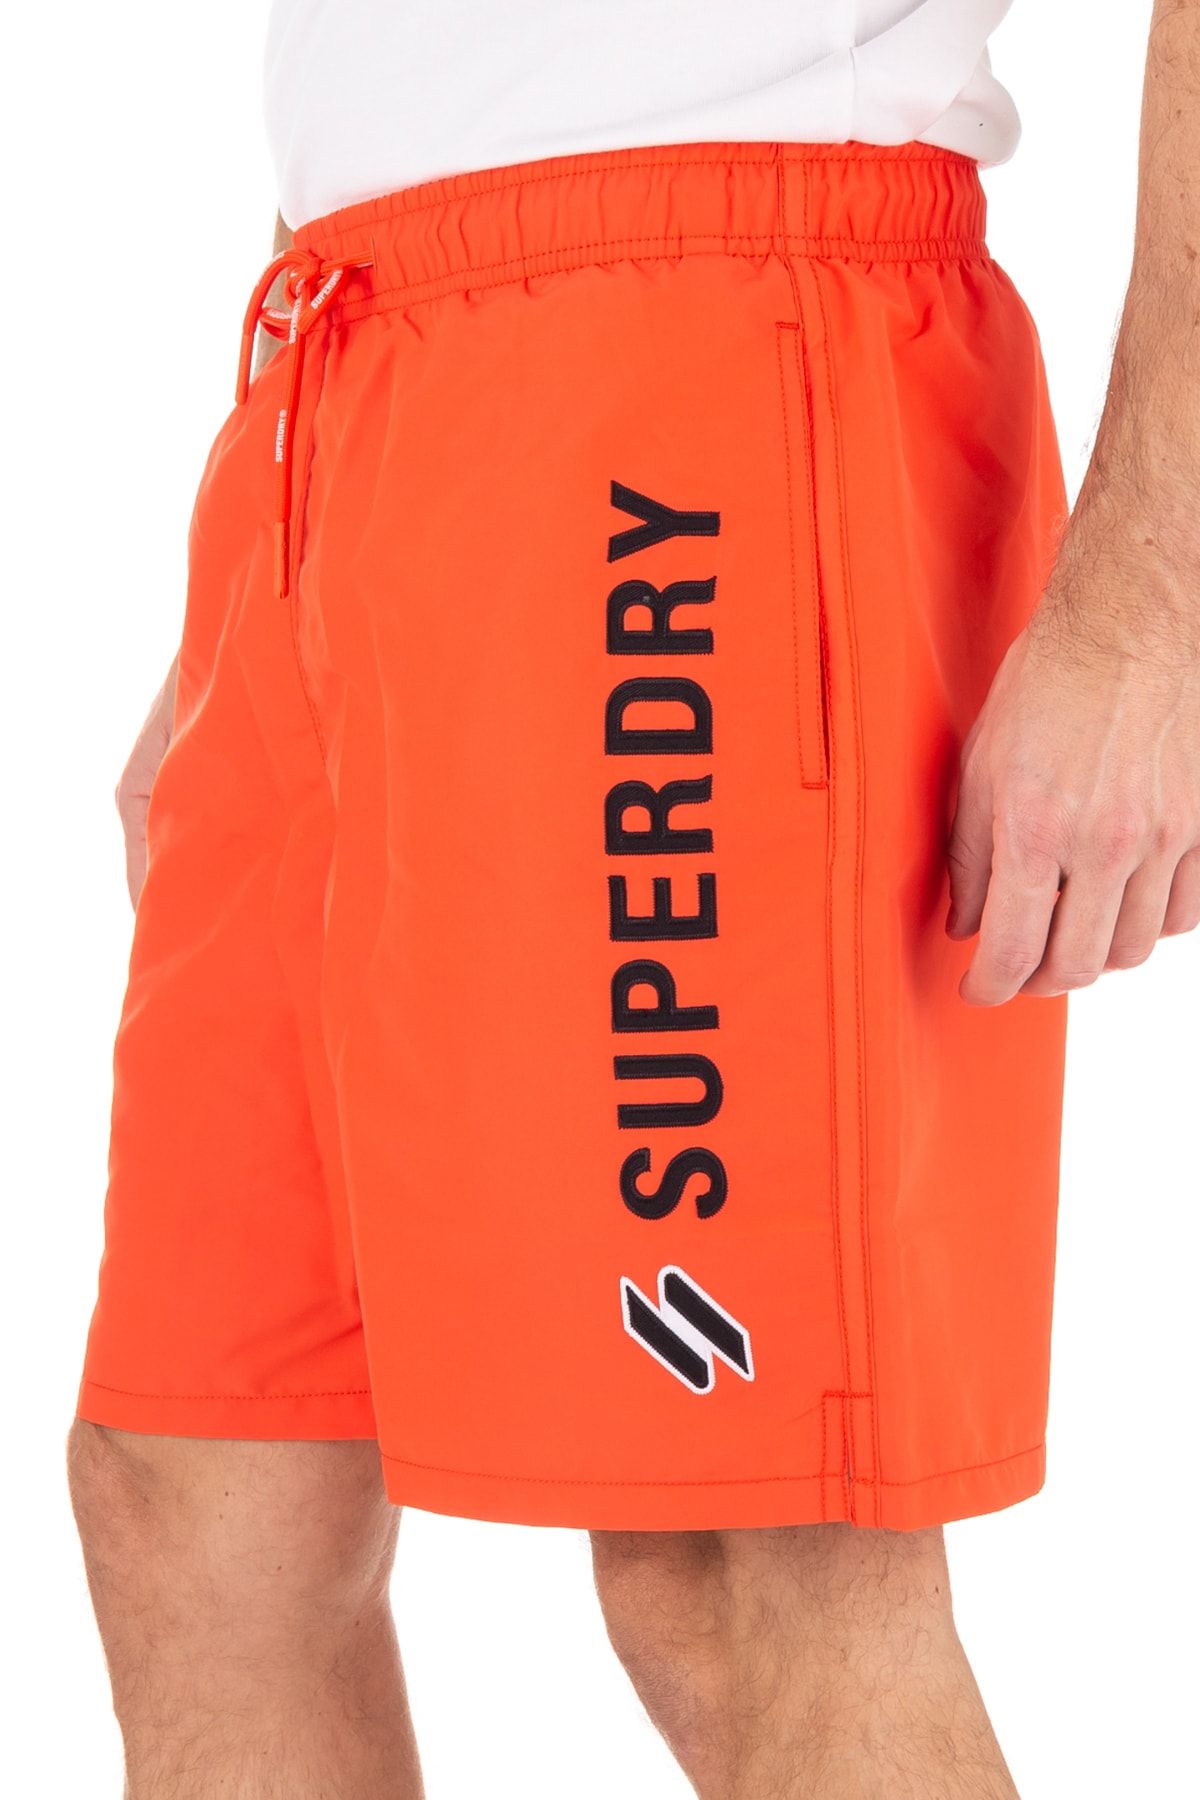 SUPERDRY Badeshorts Orange - Slogan - Trendyol